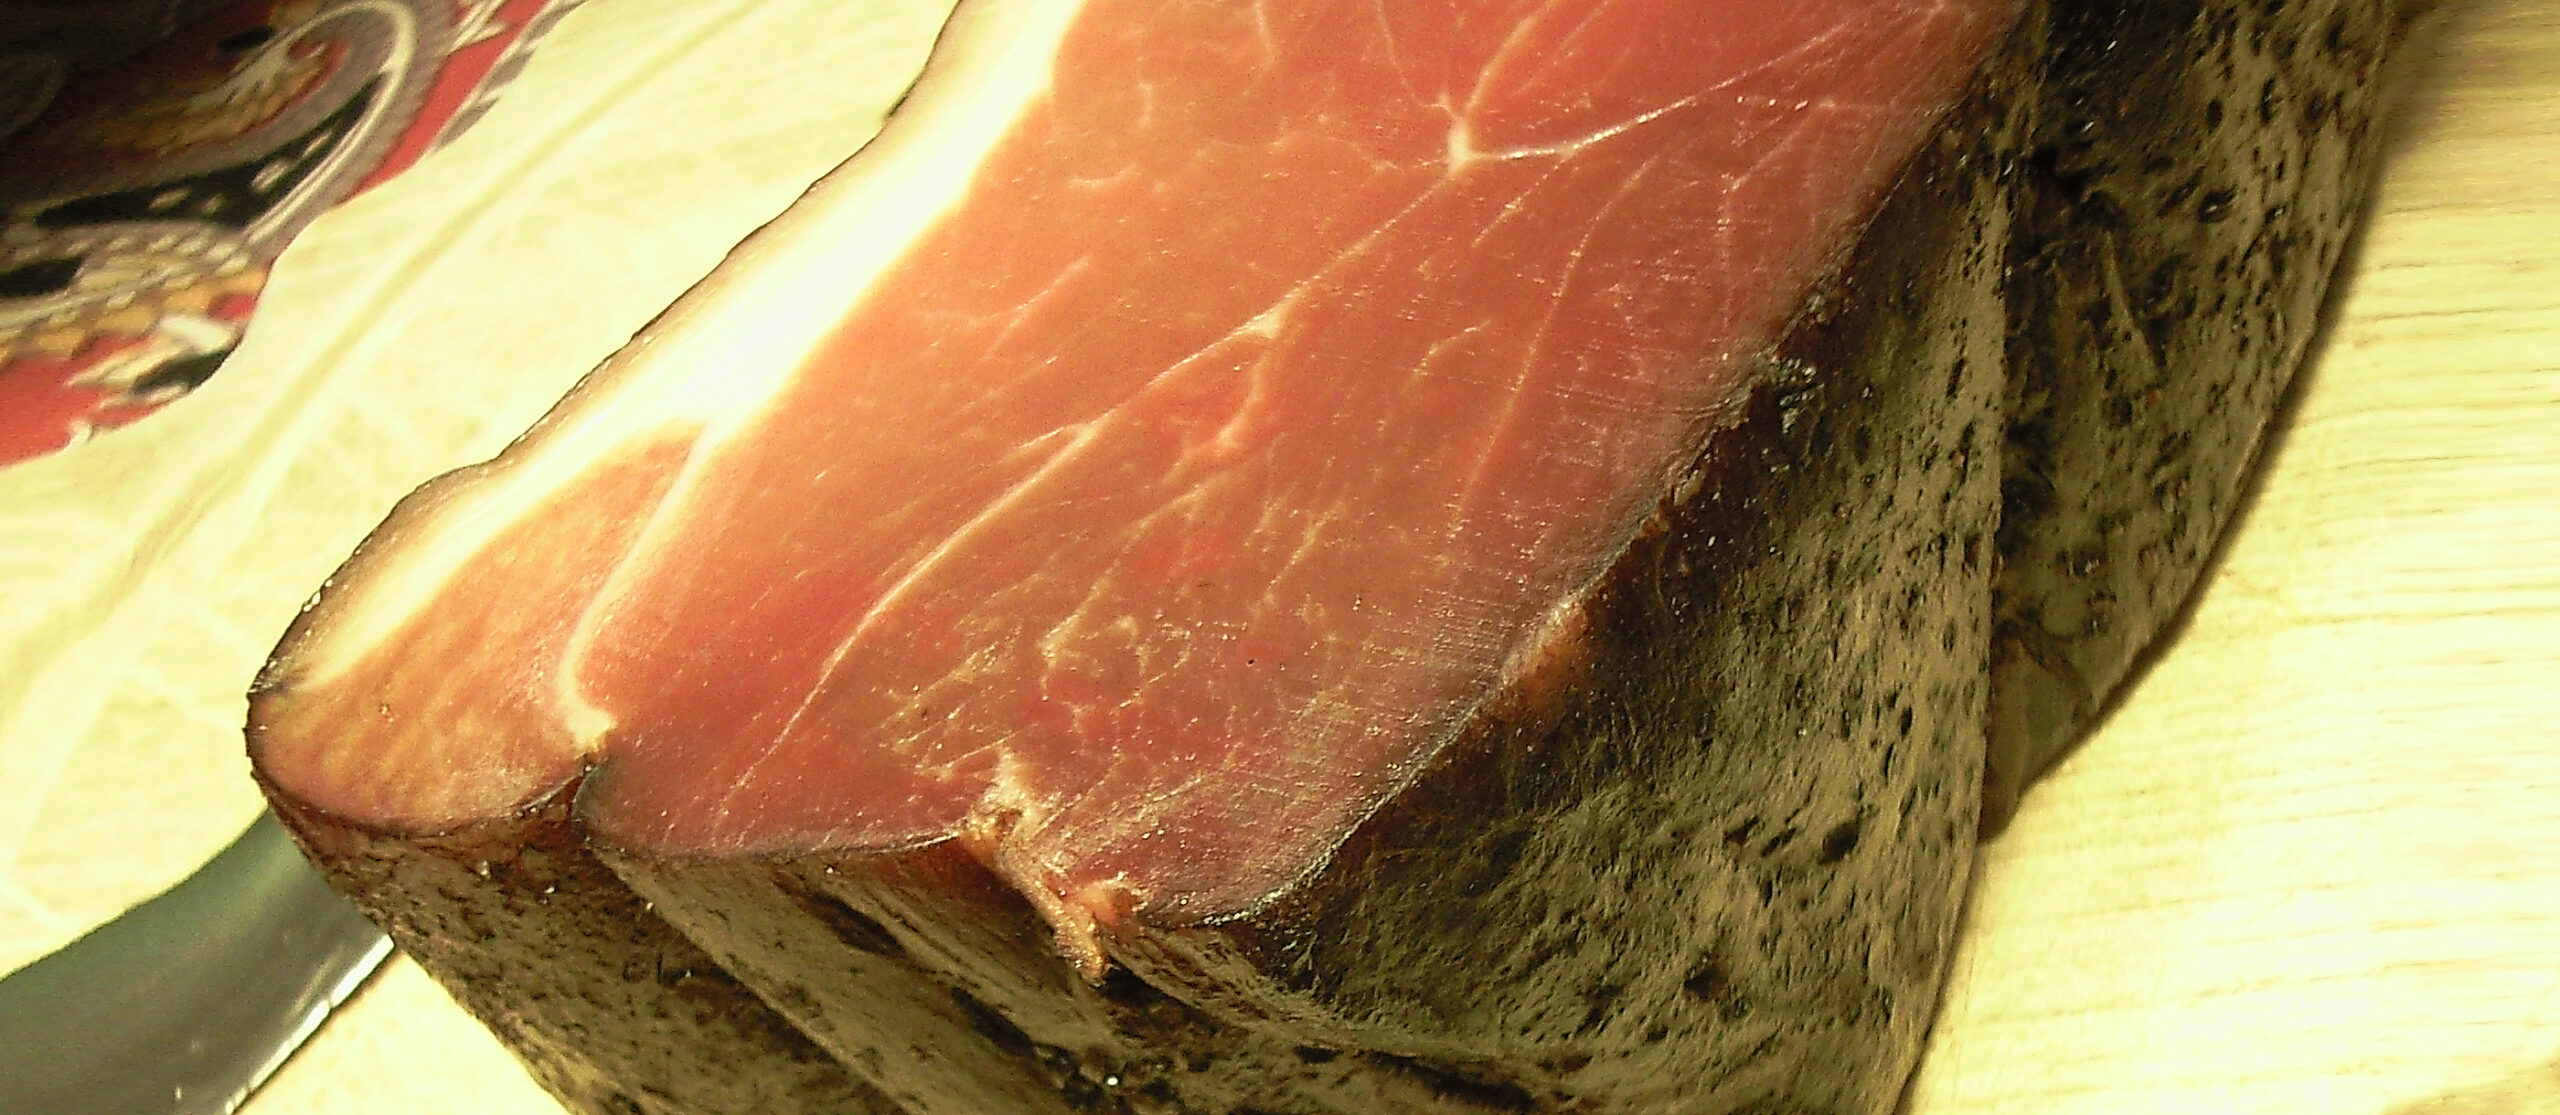 German Schwarzwälder Schinken - How Italian Tradition Influences Global Cured Meats